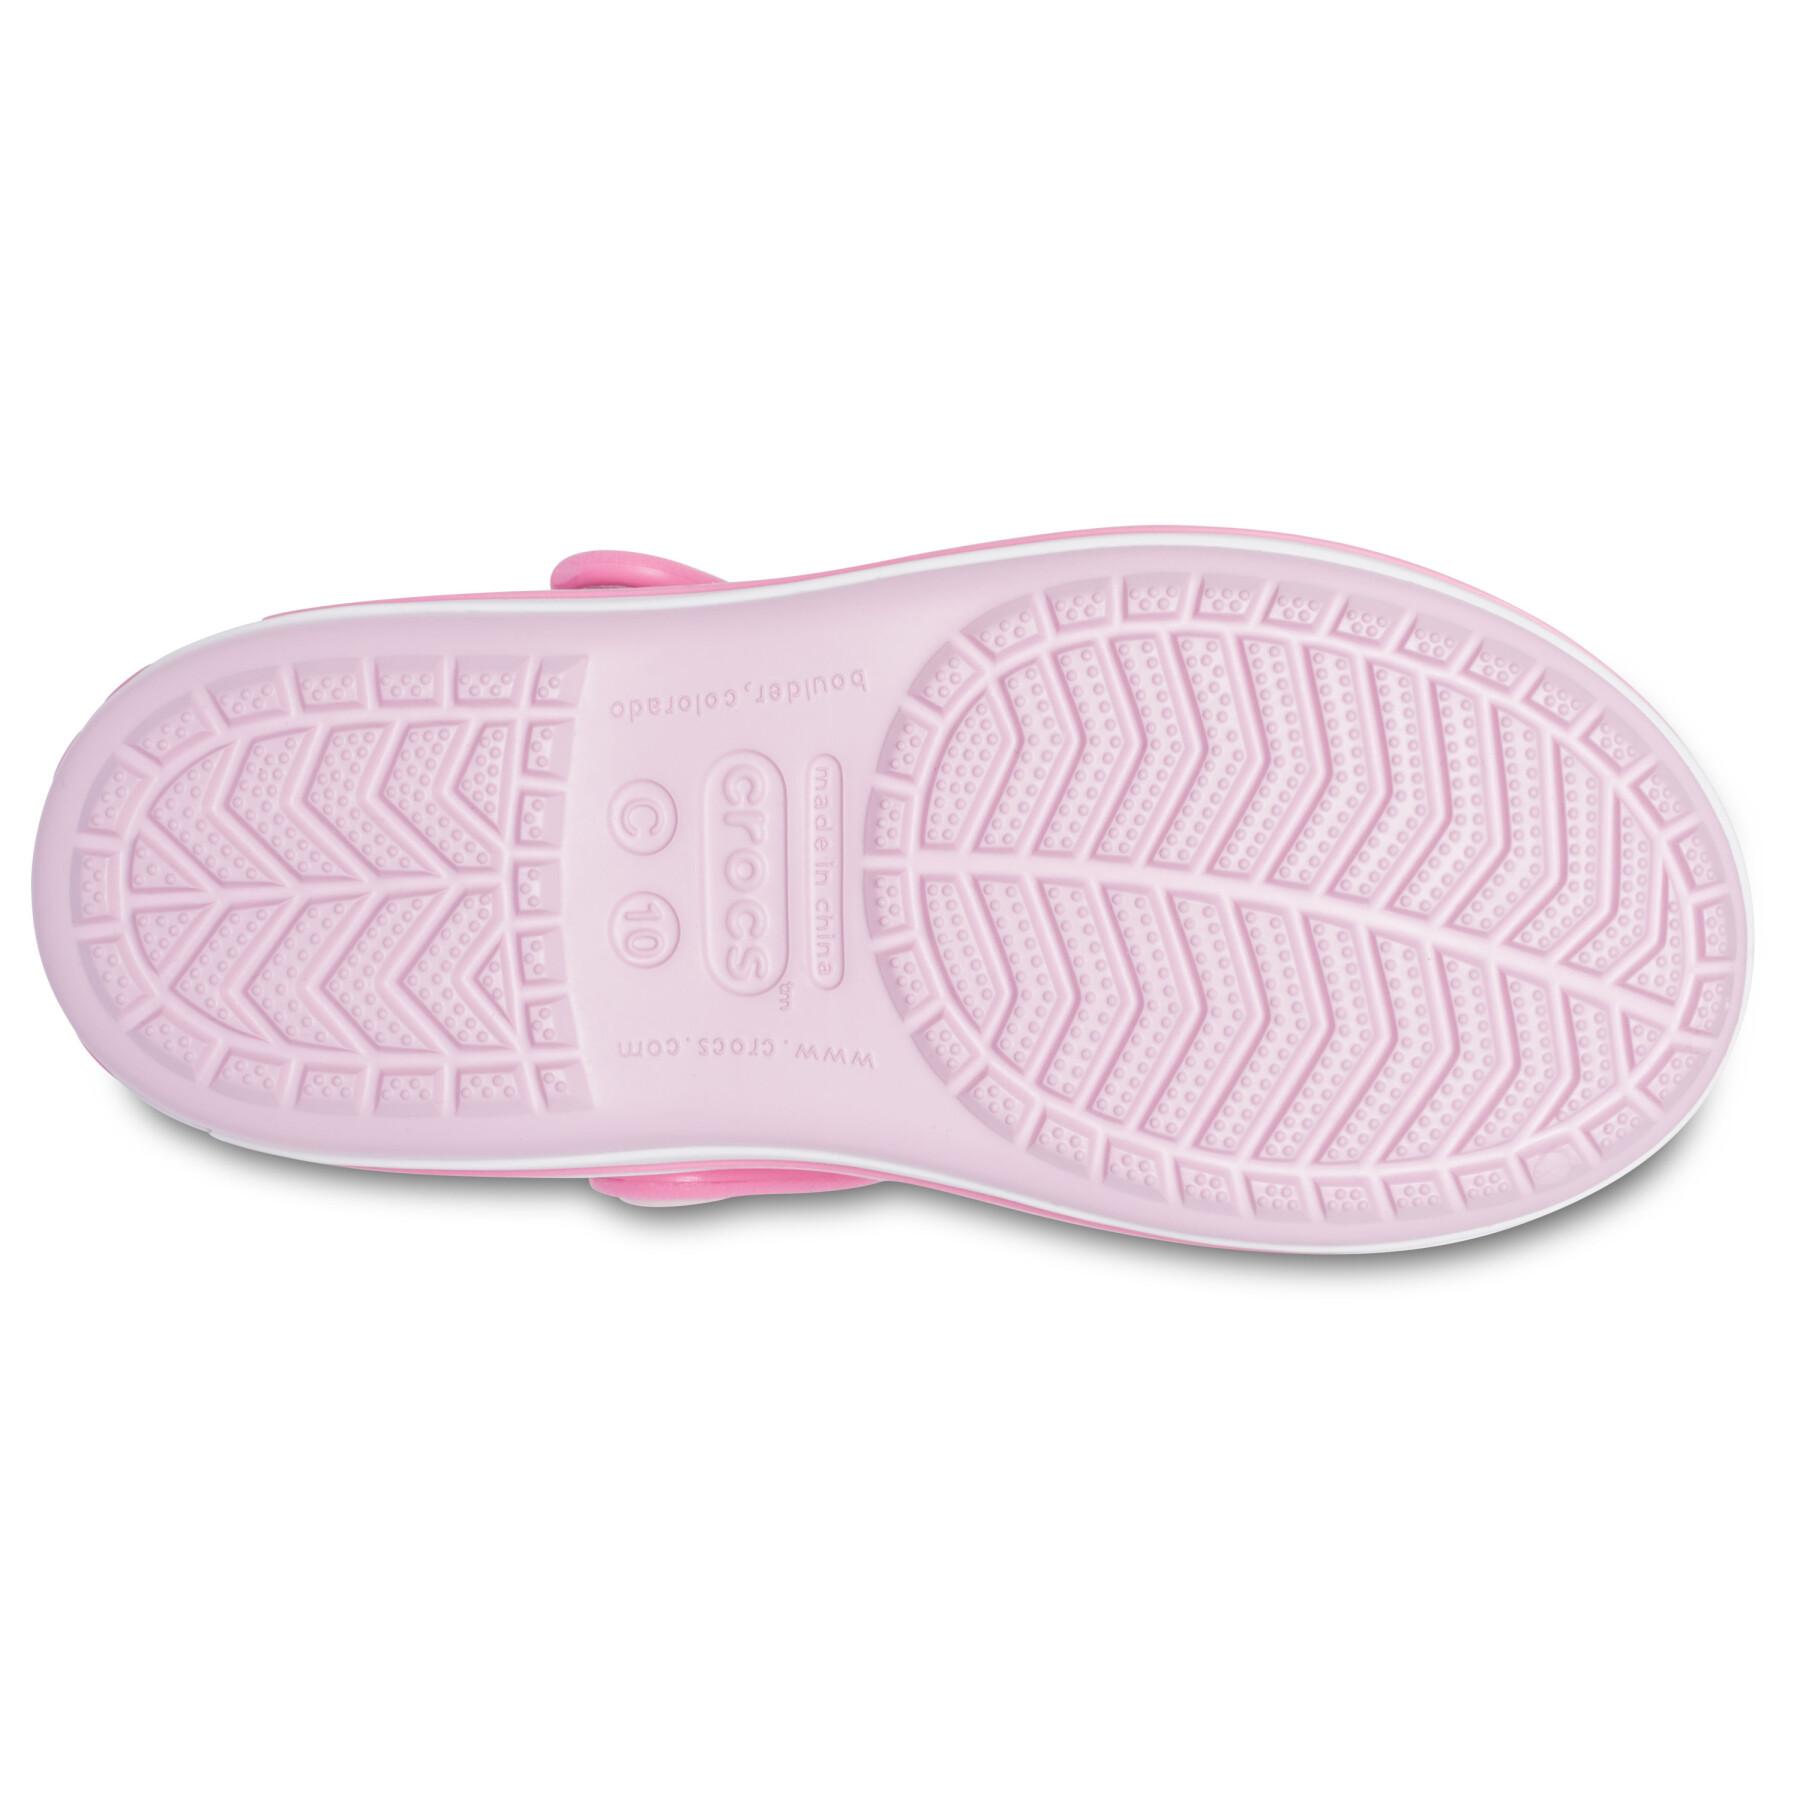 Sandalias para niños Crocs crocband™